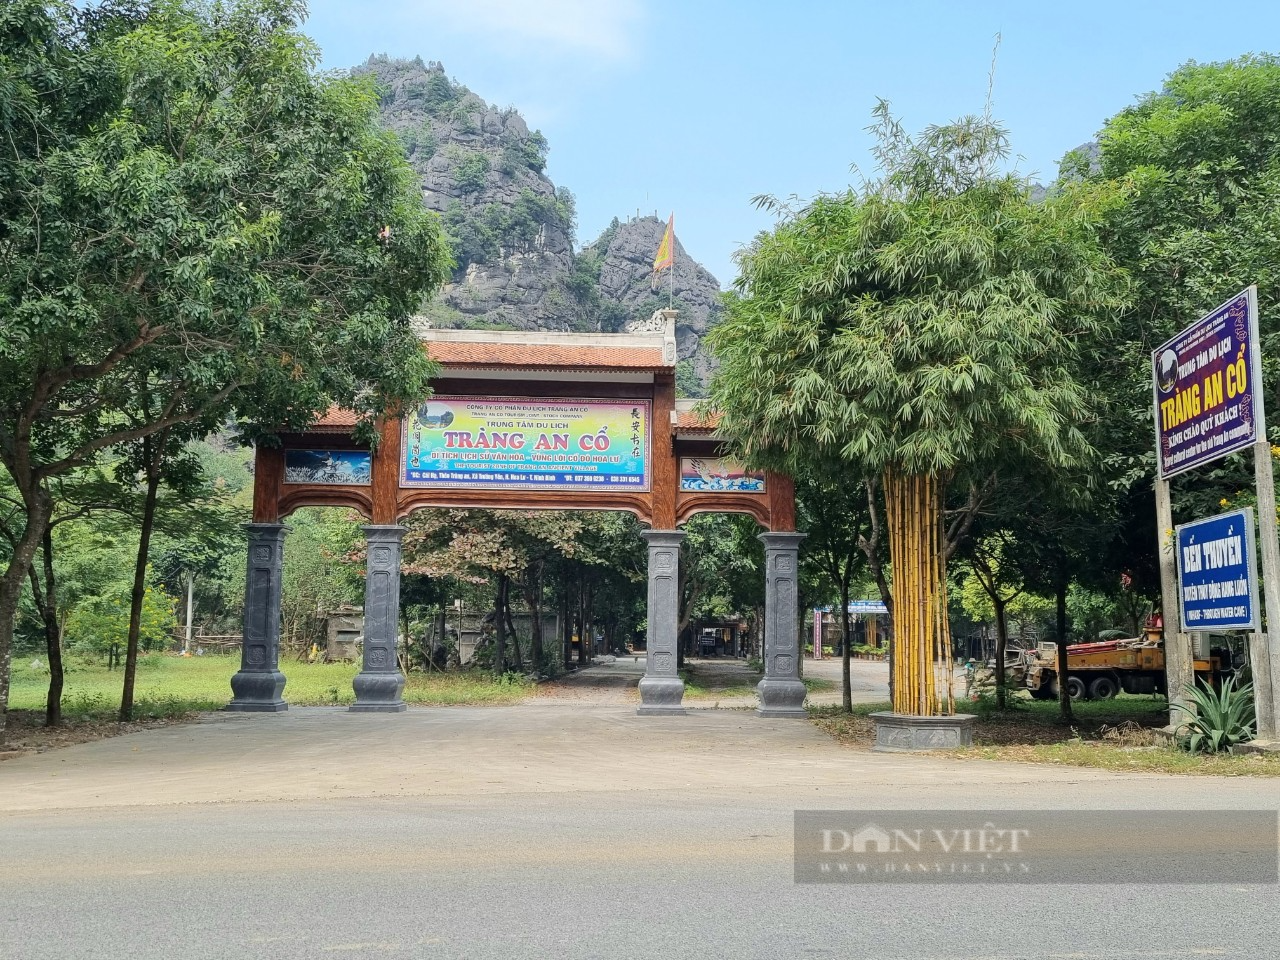 Quy hoạch đô thị Ninh Bình thành trung tâm dịch vụ, du lịch sinh thái văn hóa - Ảnh 4.